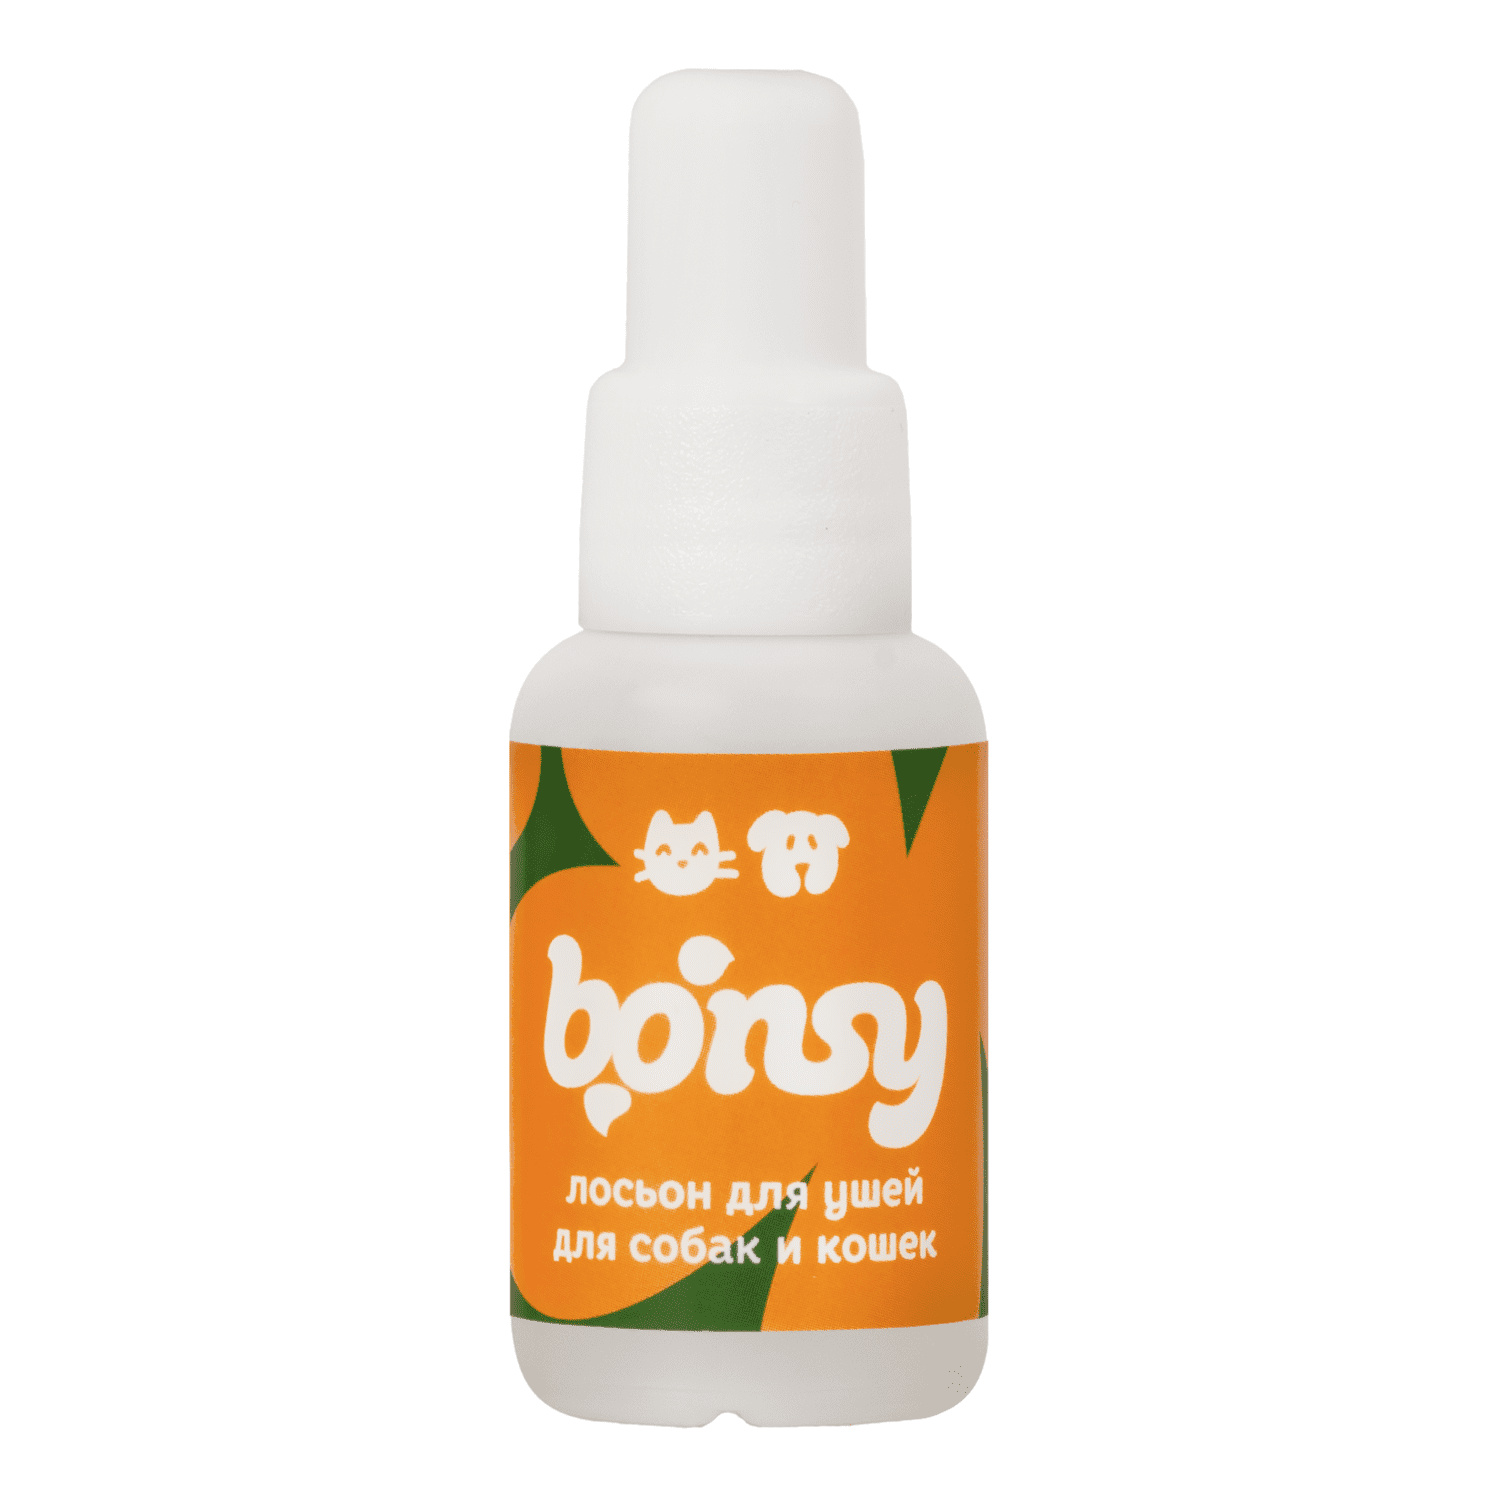 Bonsy Bonsy лосьон для очистки ушей кошек и собак (30 г) bonsy bonsy антипаразитарный биоспрей для обработки места обитания кошек и собак 150 г